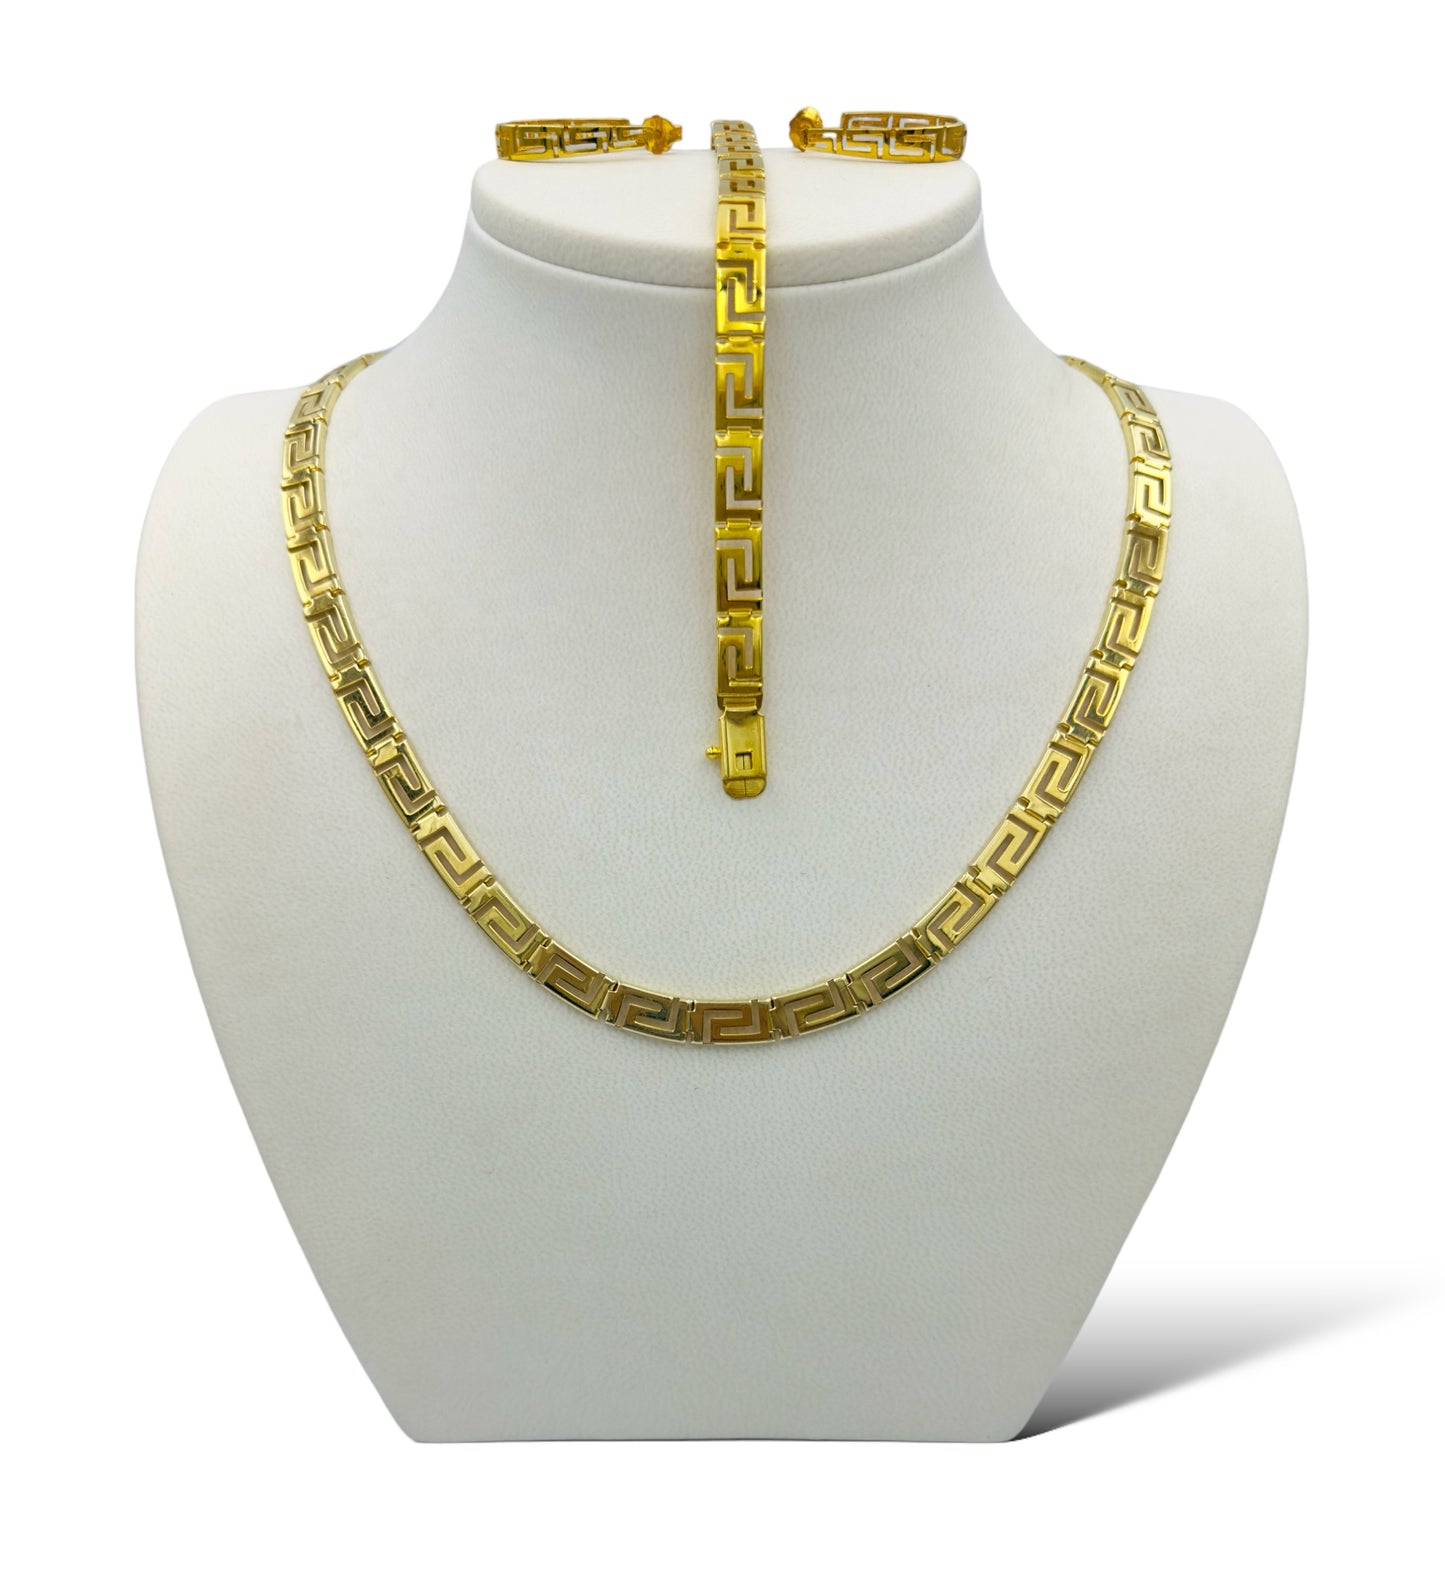 Silver set necklace, bracelet and earrings Meander design